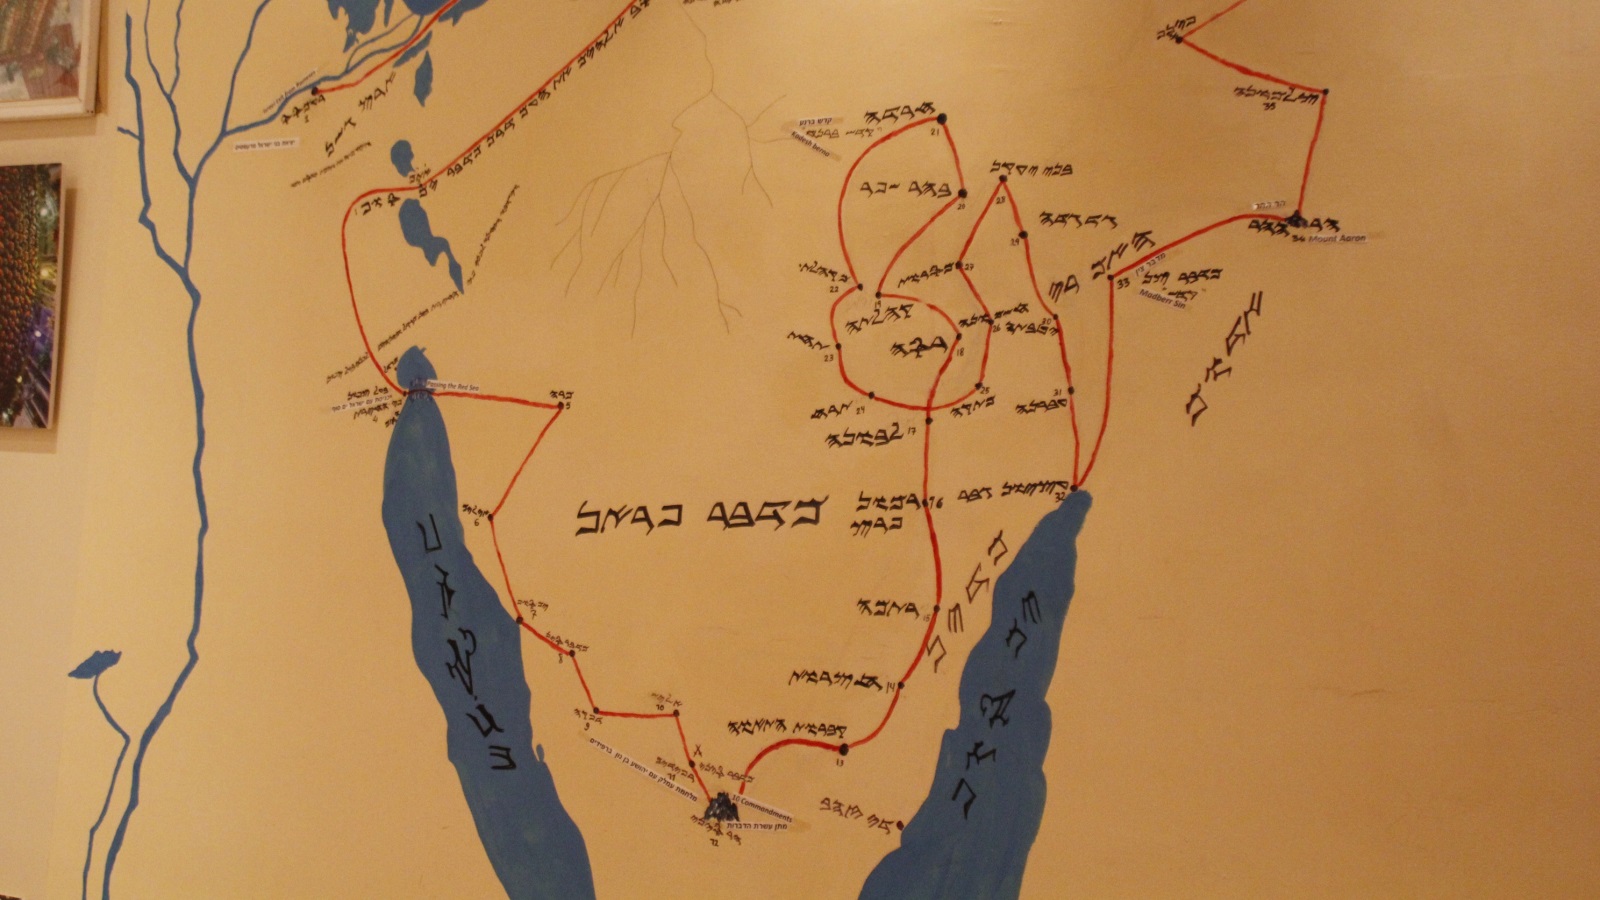 رسم لخريطة تيه بني إسرائيل في صحراء سيناء بعد خروجهم من مصر قبل 3654 سنة (الجزيرة)